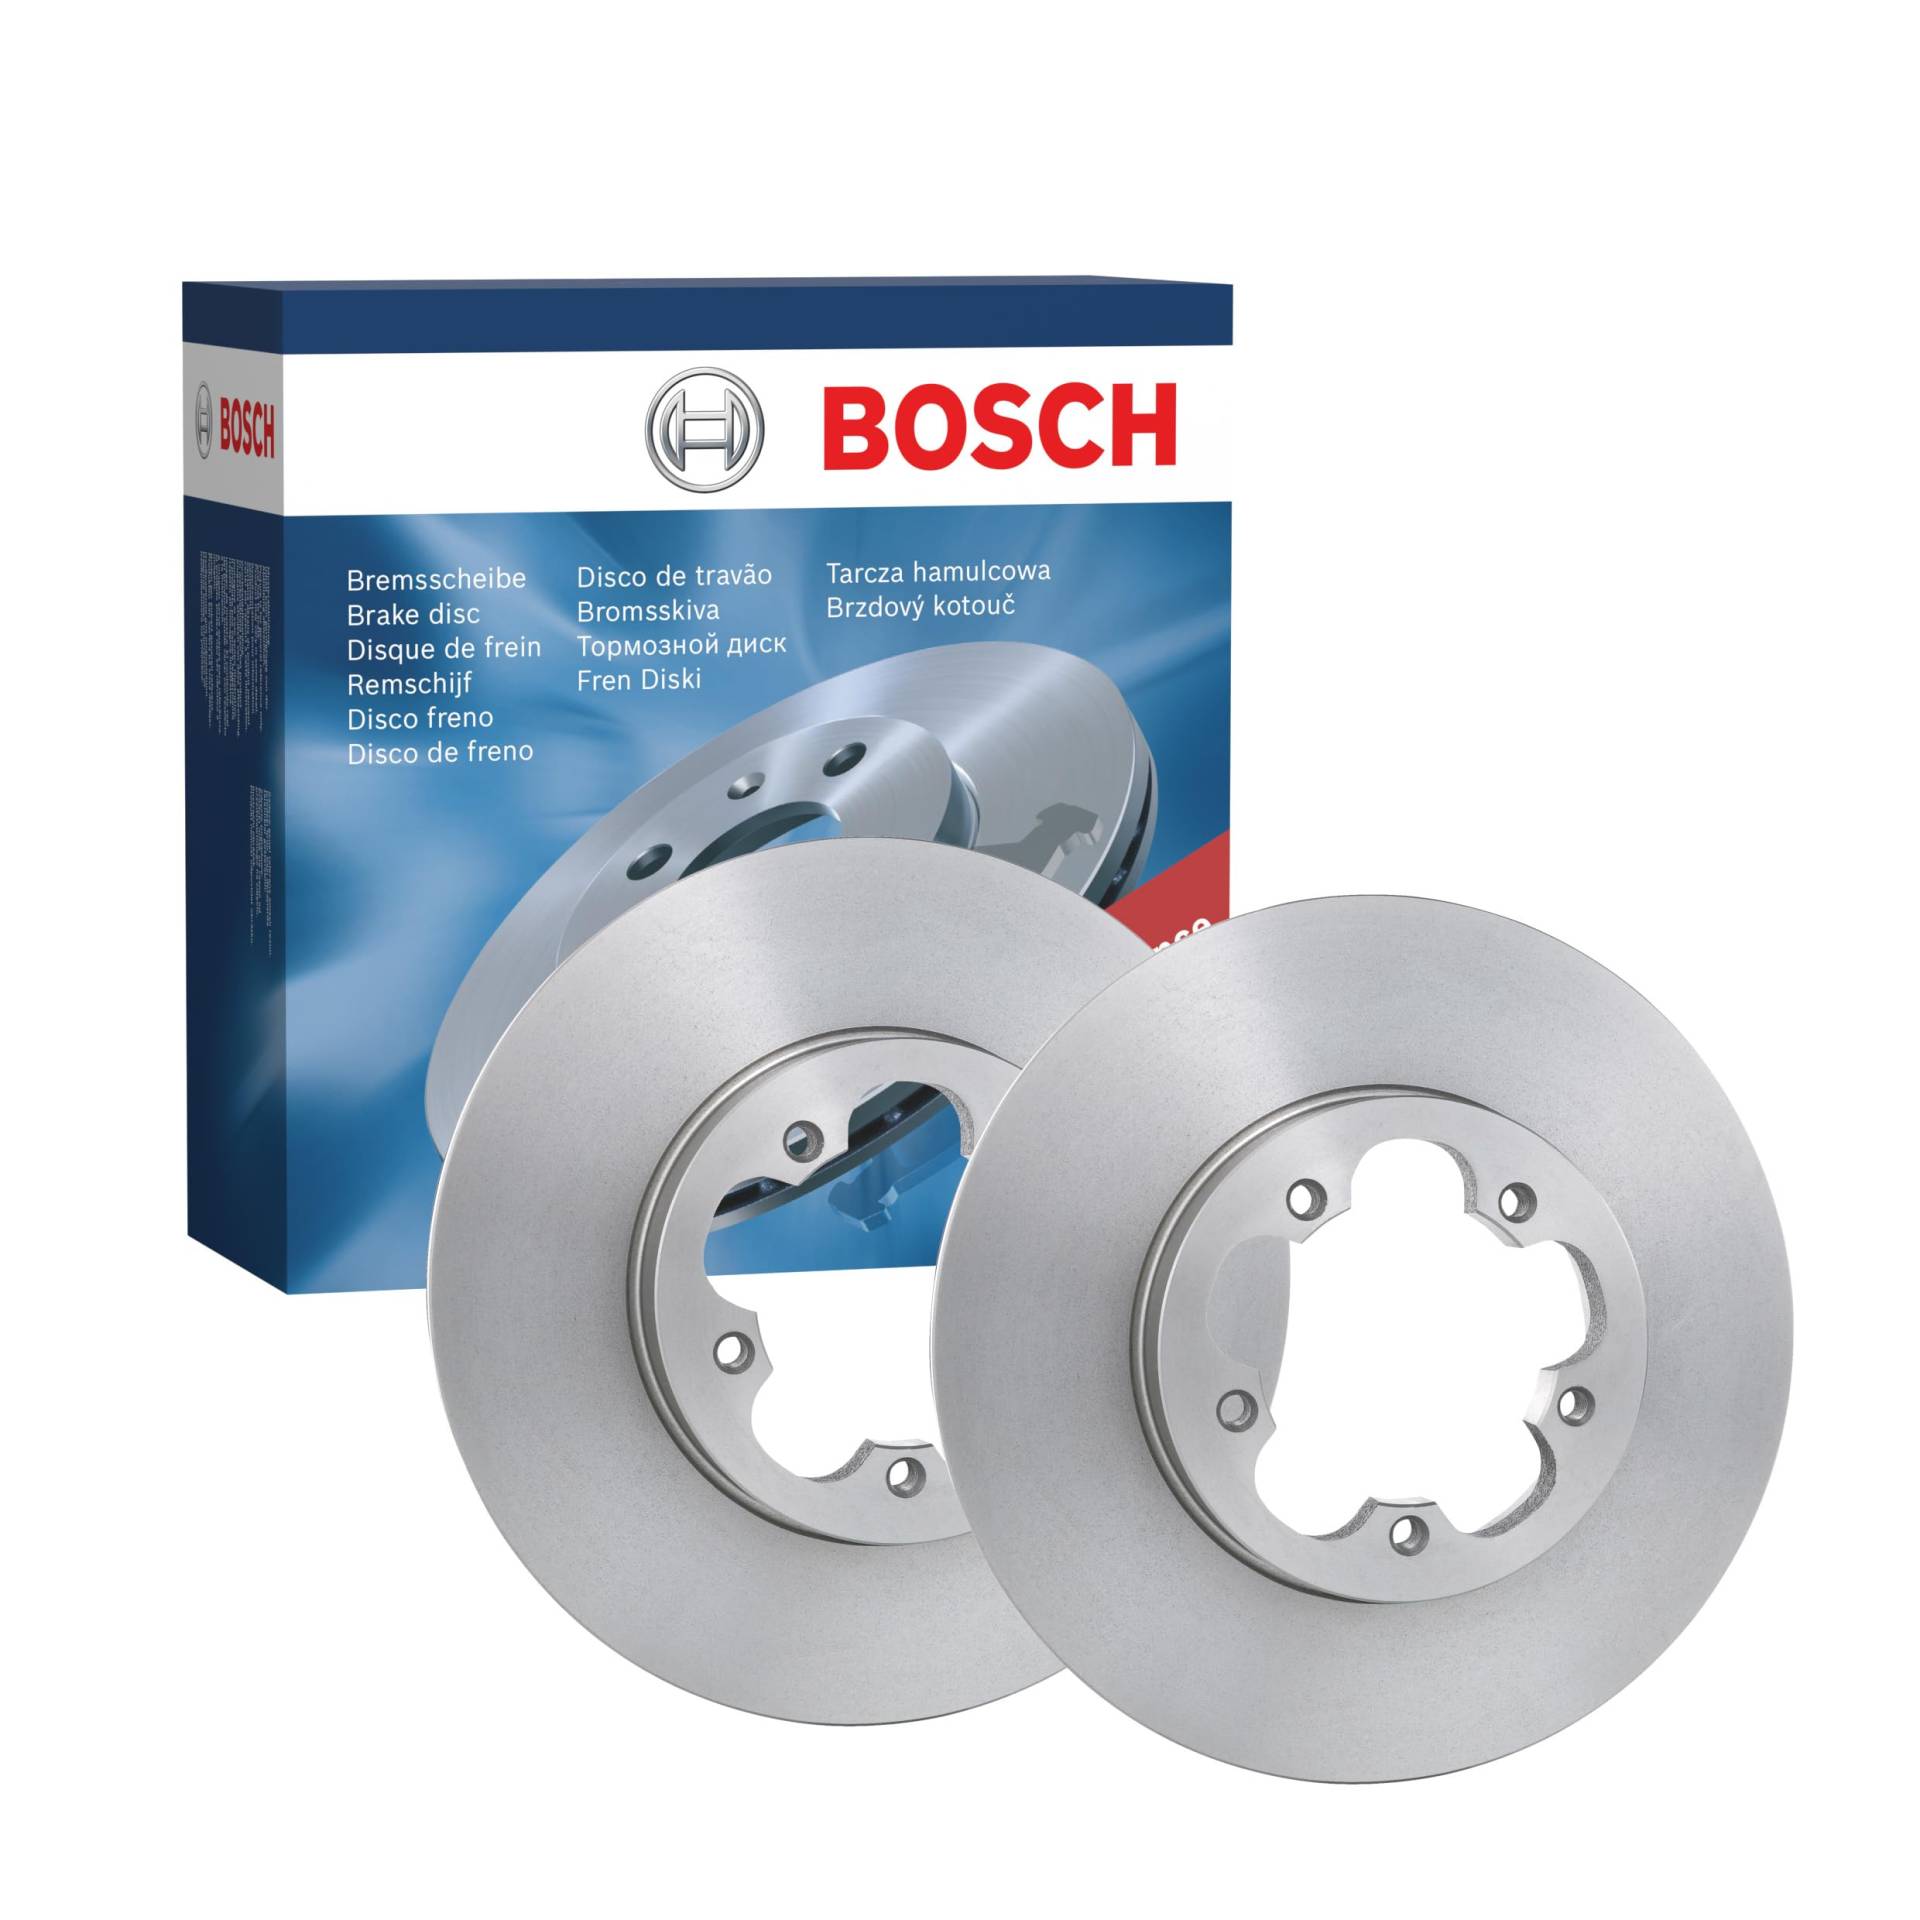 Bosch BD1251 Bremsscheiben - Vorderachse - ECE-R90 Zertifizierung - zwei Bremsscheiben pro Set von Bosch Automotive